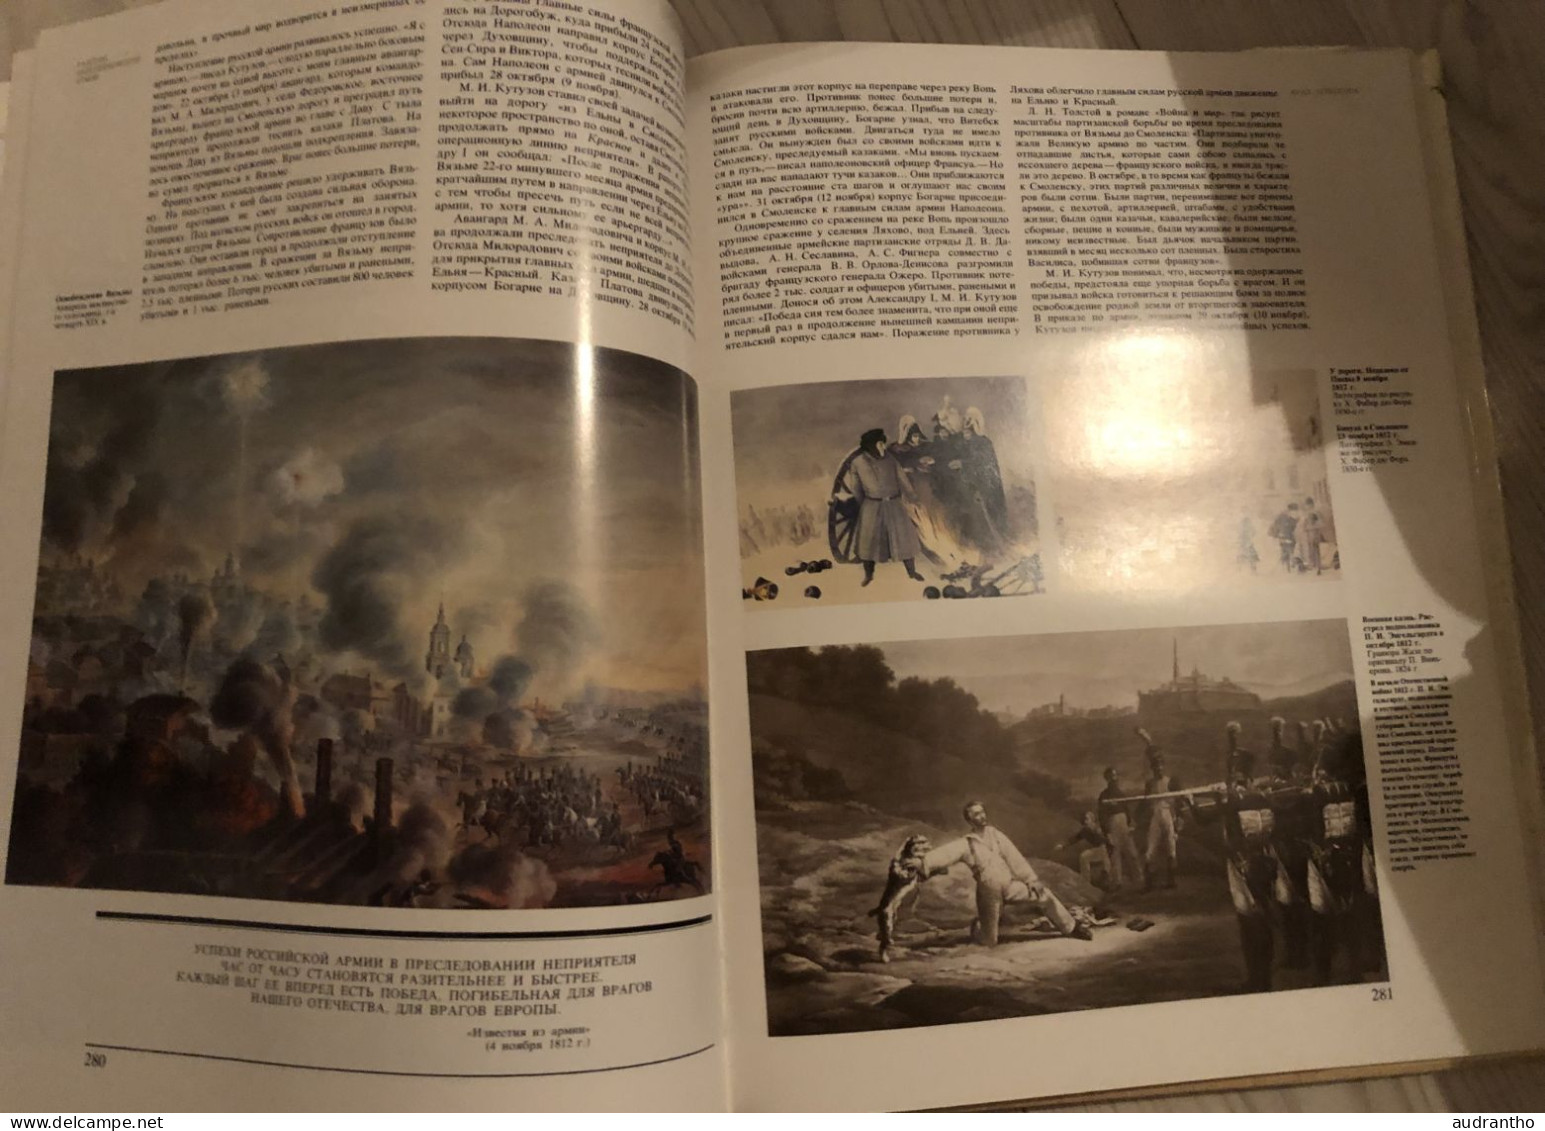 livre en russe BORODINO 1812 - mockba 1987 - guerre patriotique de l'armée et peuple russe contre Napoléon